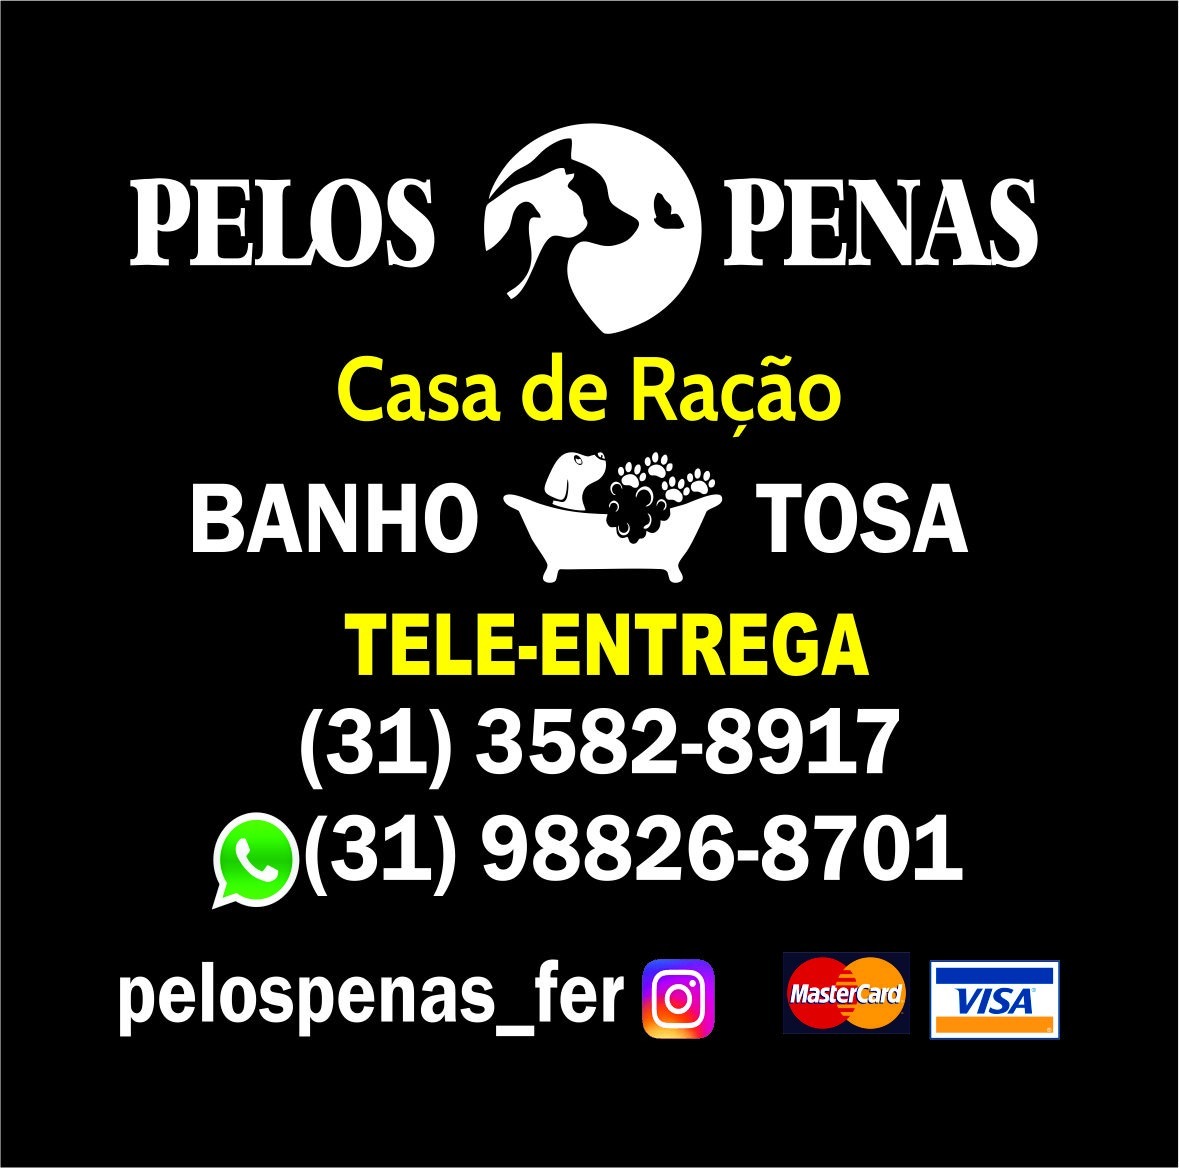 PELOS E PENAS CASA DE RAÇÃO & PET SHOP